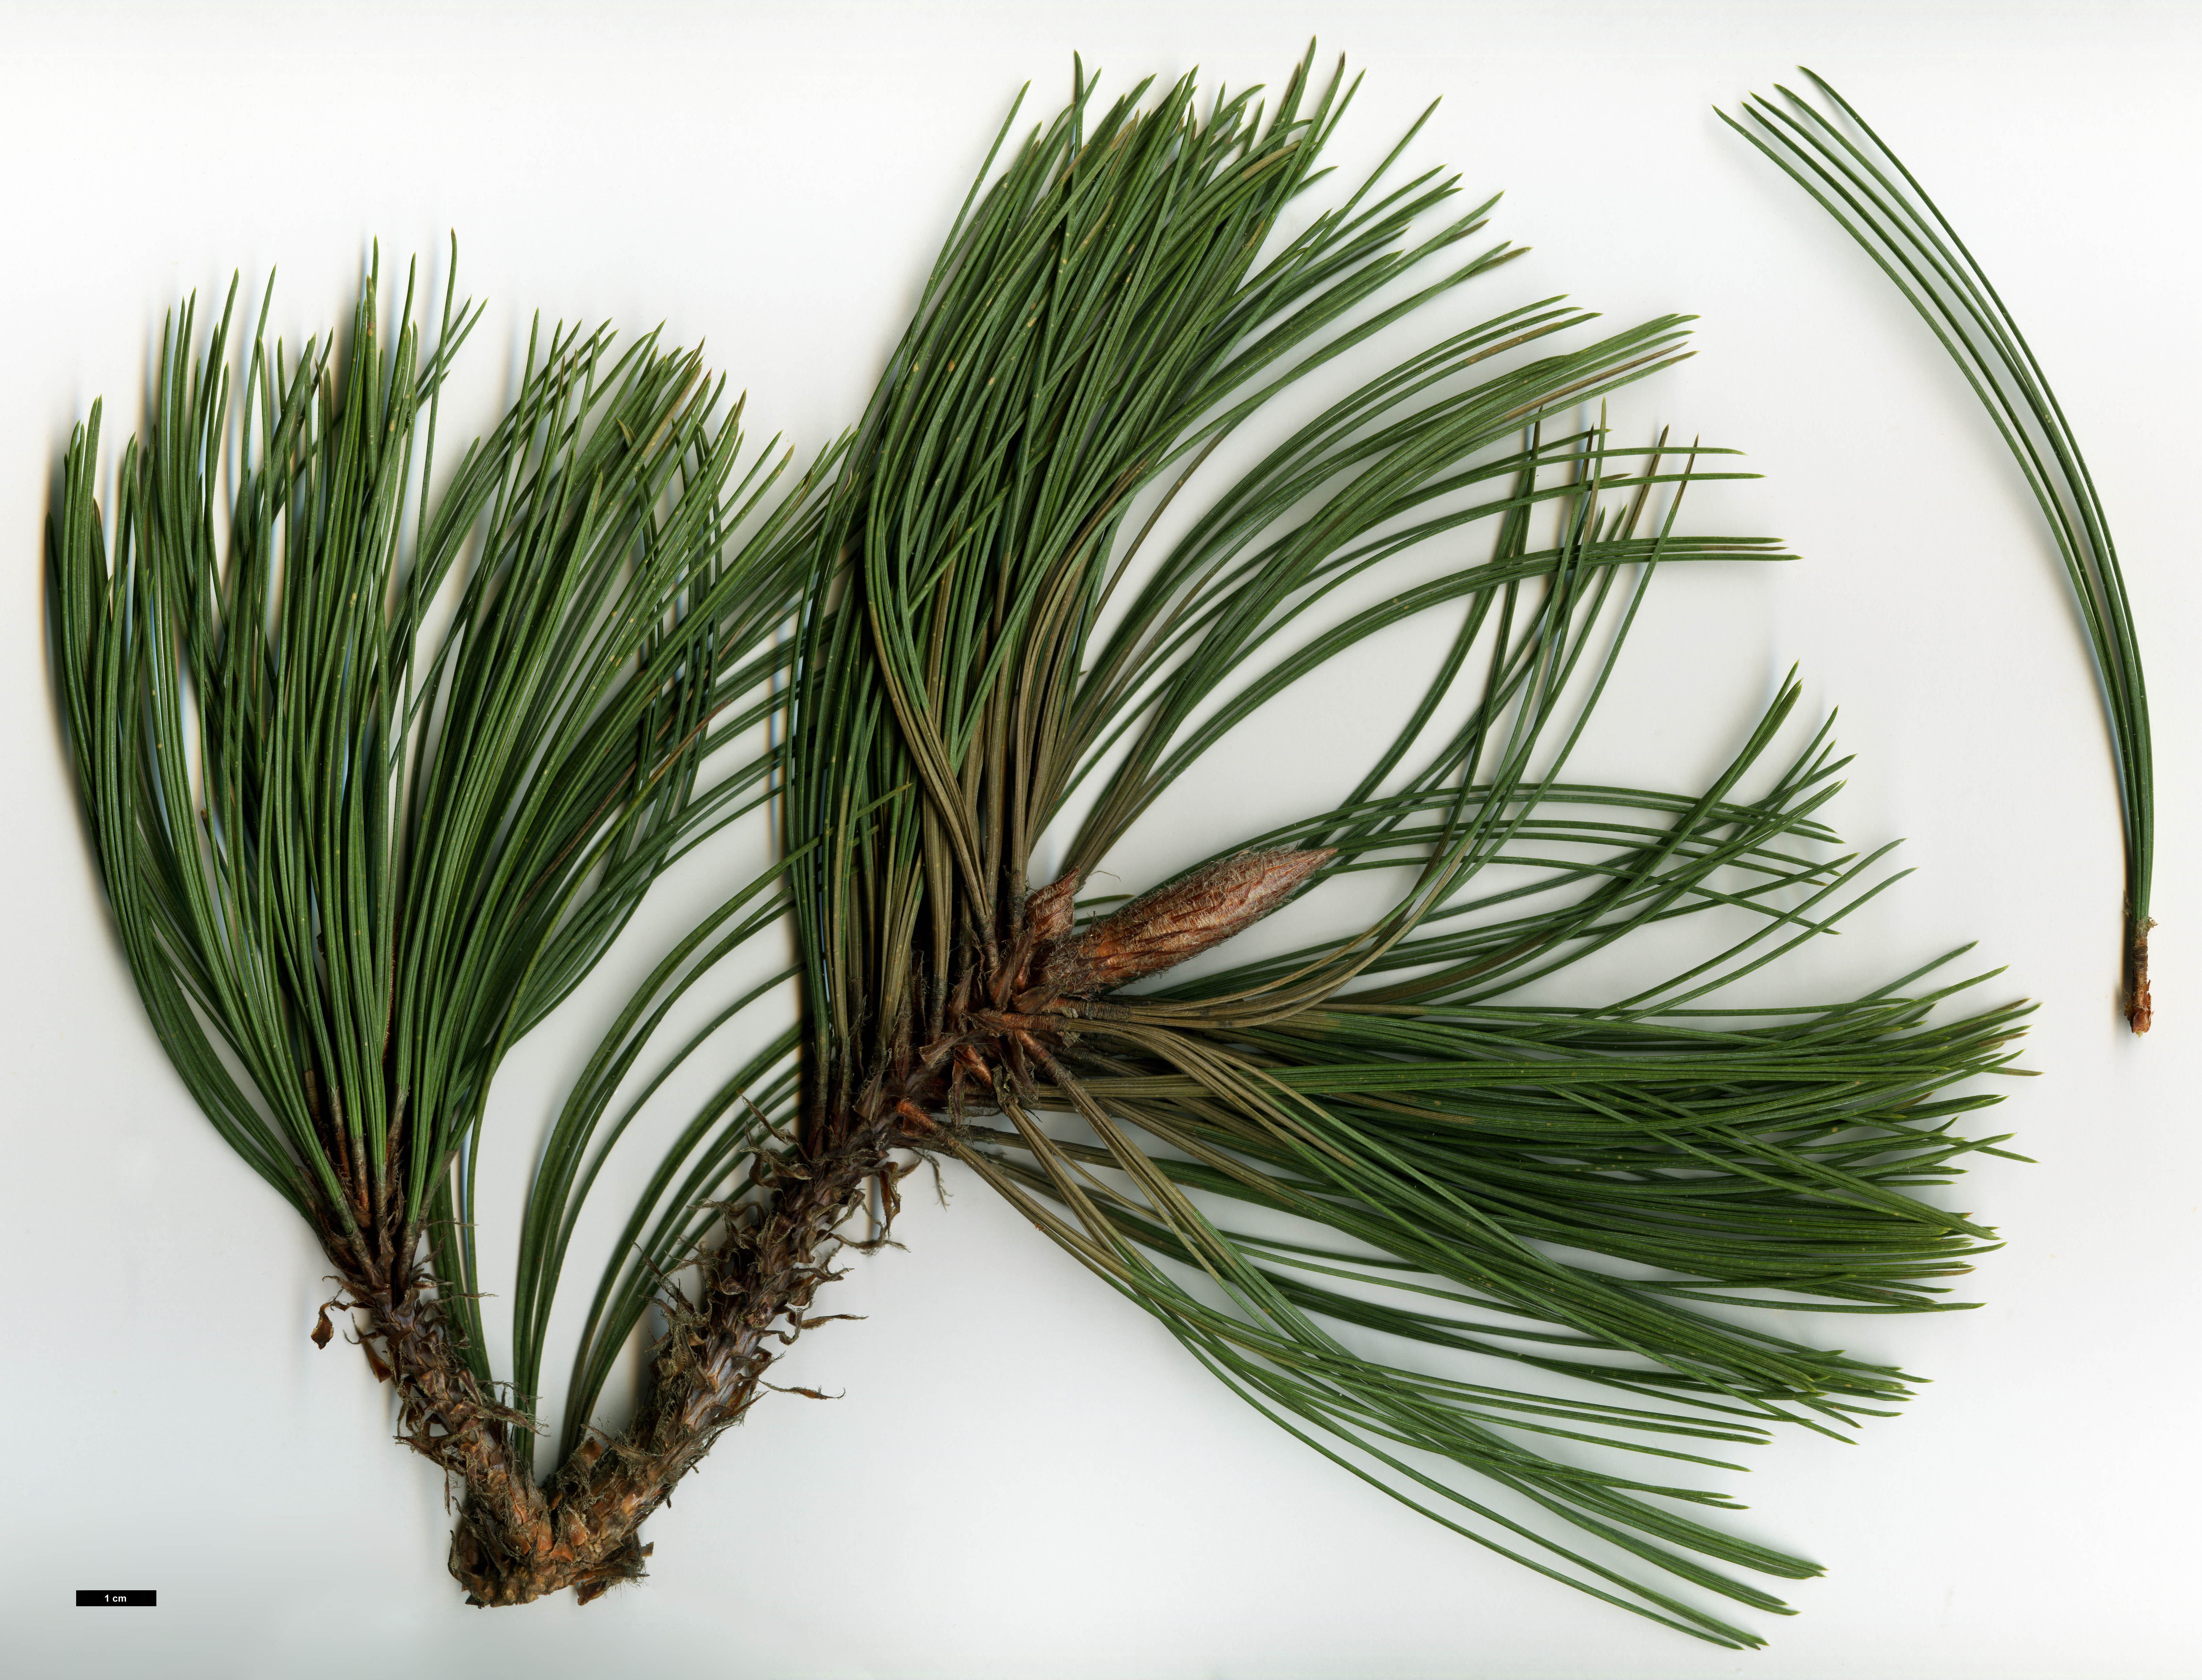 High resolution image: Family: Pinaceae - Genus: Pinus - Taxon: arizonica - SpeciesSub: cooperi